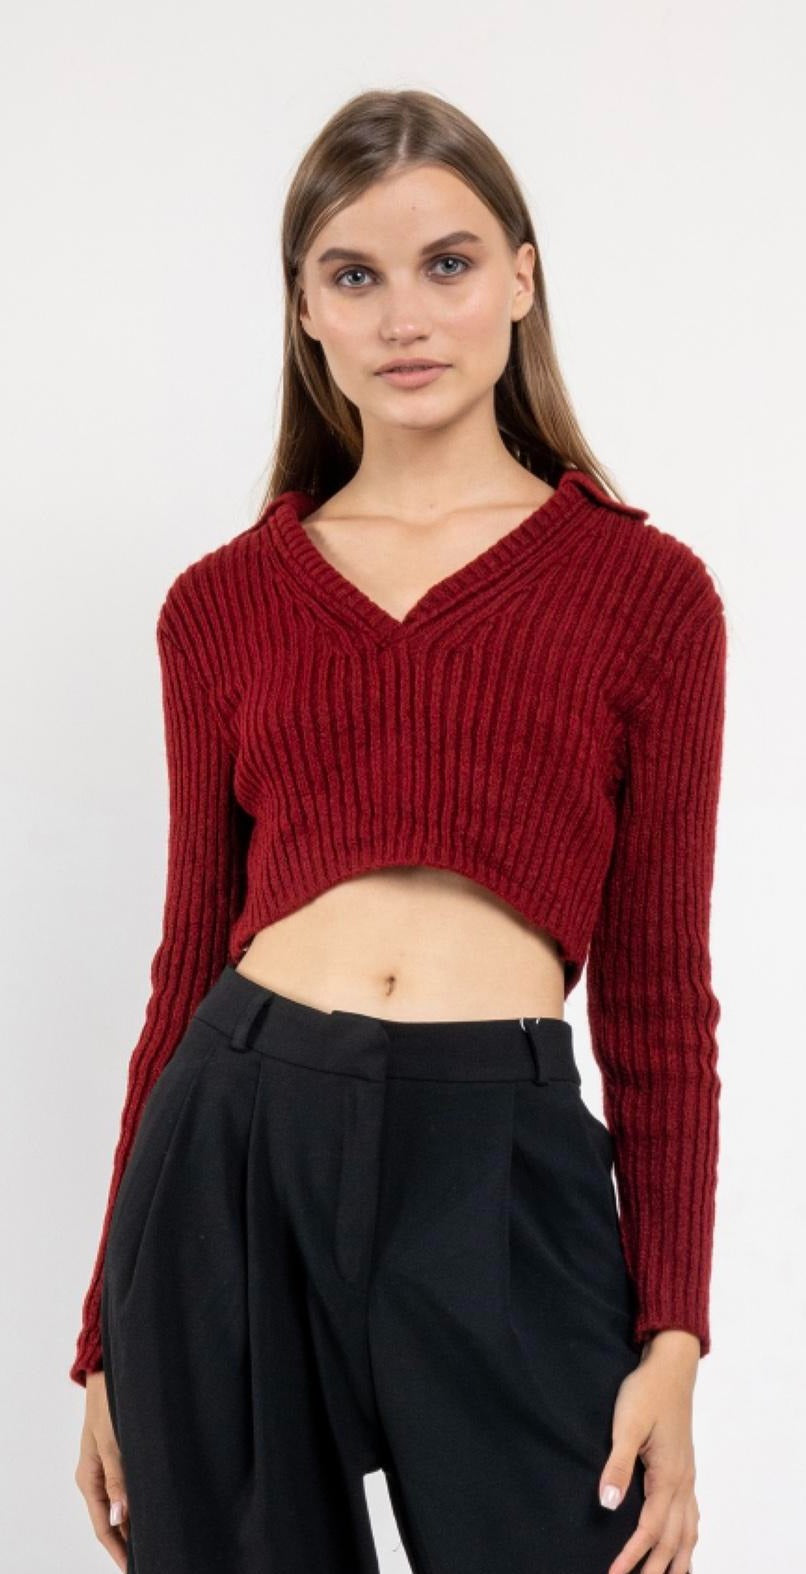 Дамски пуловер VELINA  https://bvseductive.com/products/дамски-пуловер-velina  50 % памук 50 % акрил къс пуловер със стилен дизайн в цвят бордо висококачествена&nbsp;изработка от фино плетиво модел , който лесно може да се съчетава чудесен избор за ежедневна визия